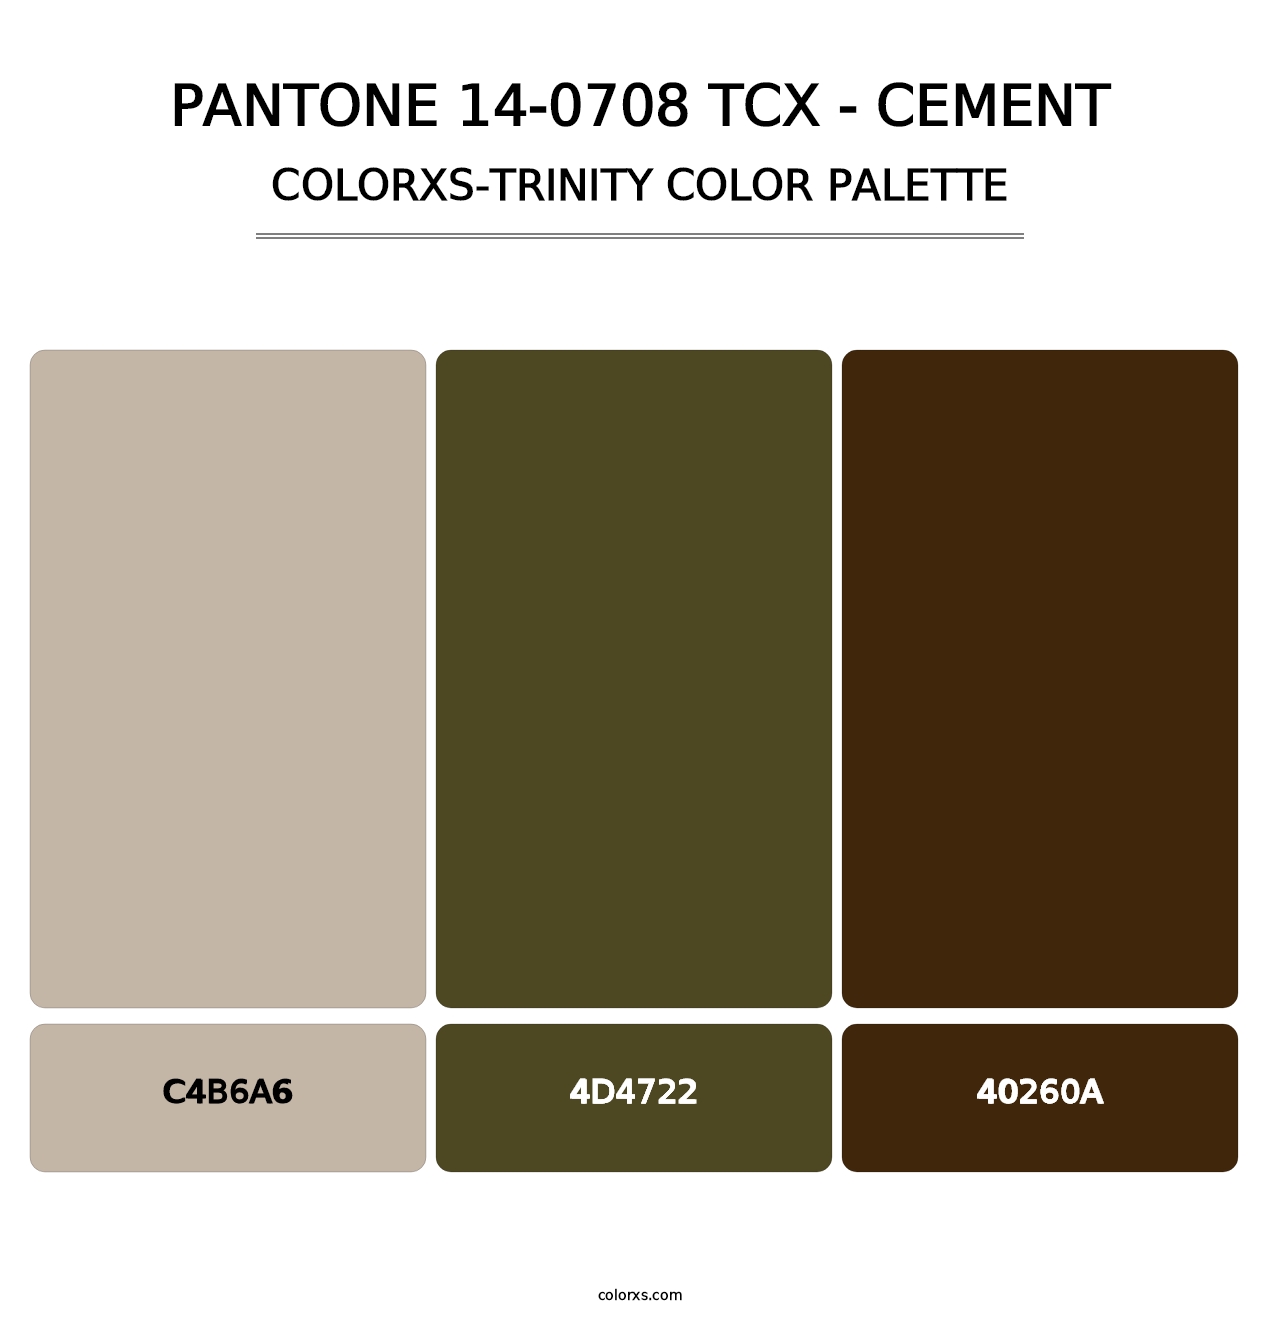 PANTONE 14-0708 TCX - Cement - Colorxs Trinity Palette